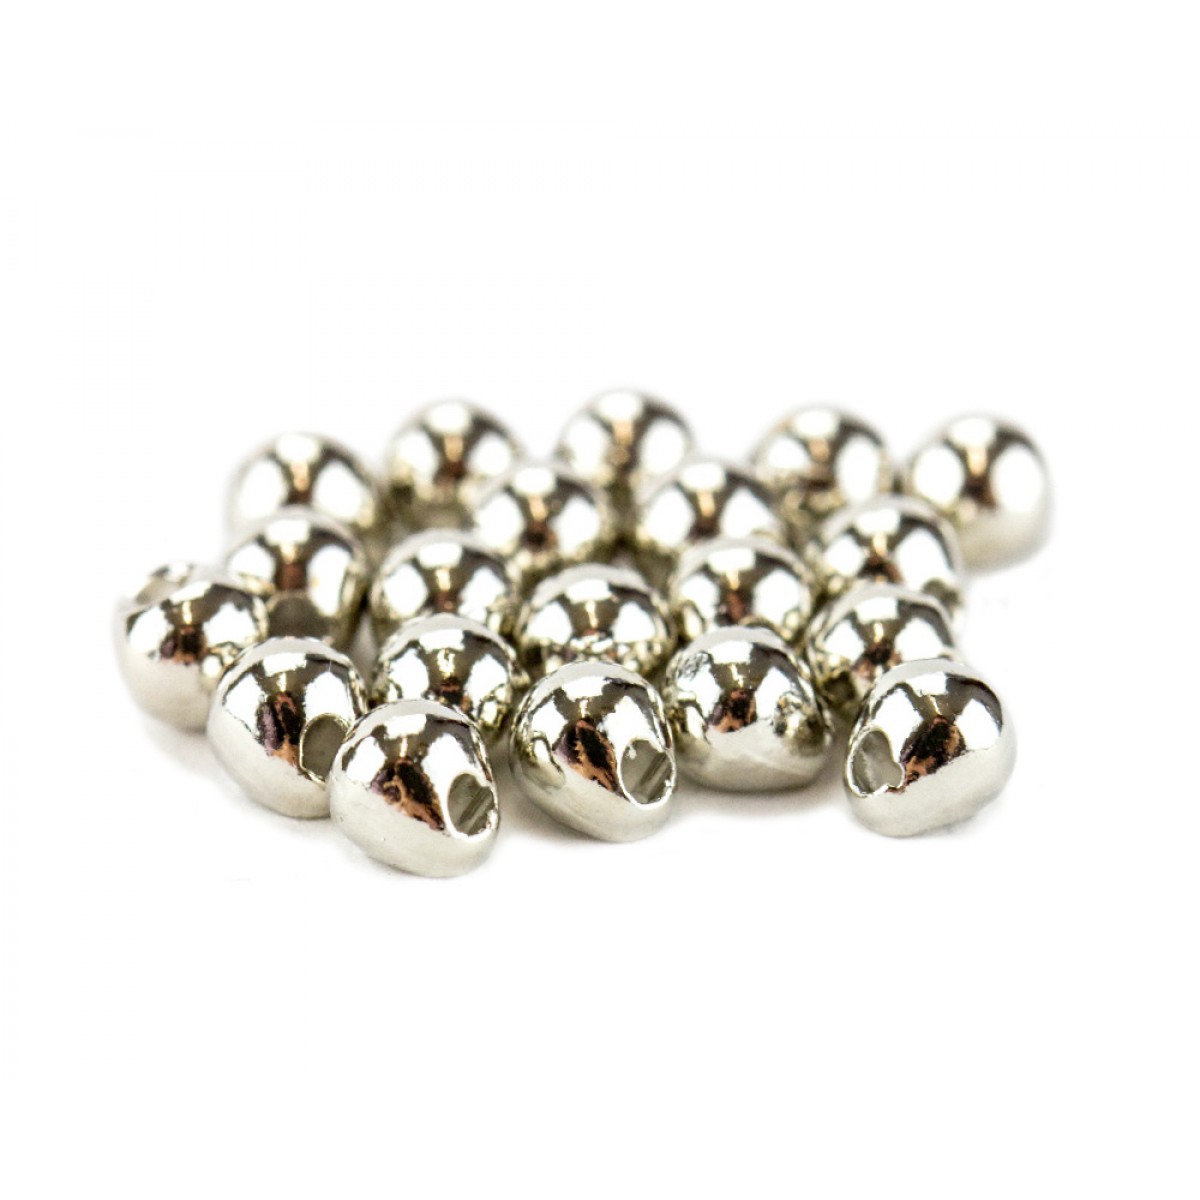 Tungsten Off Center Beads (silver)